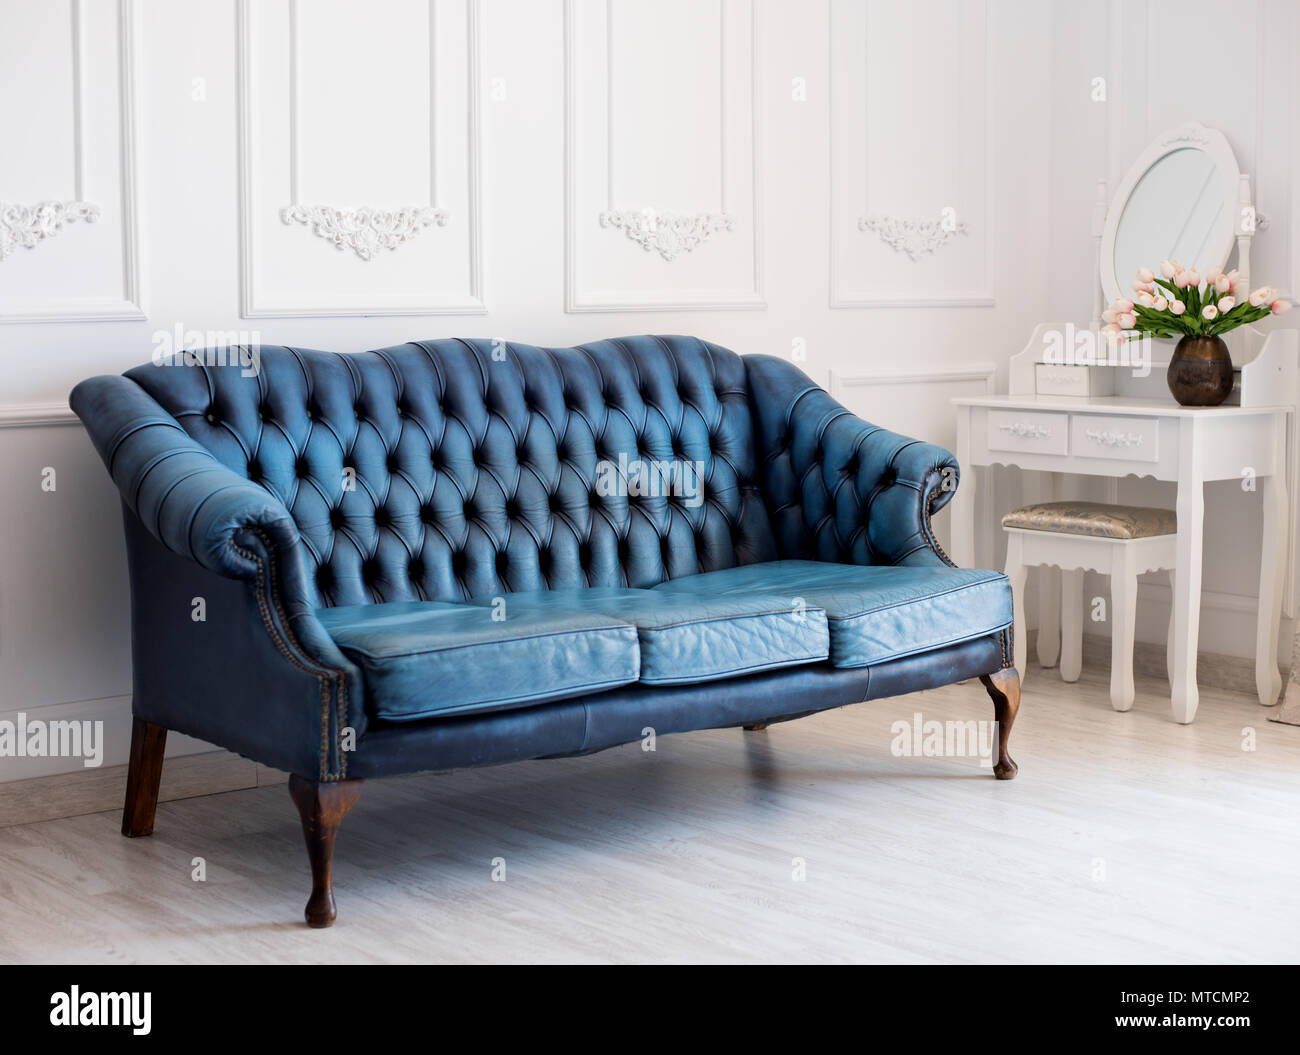 Lujoso cuero sofá azul estilo vintage en la habitación. Foto de stock